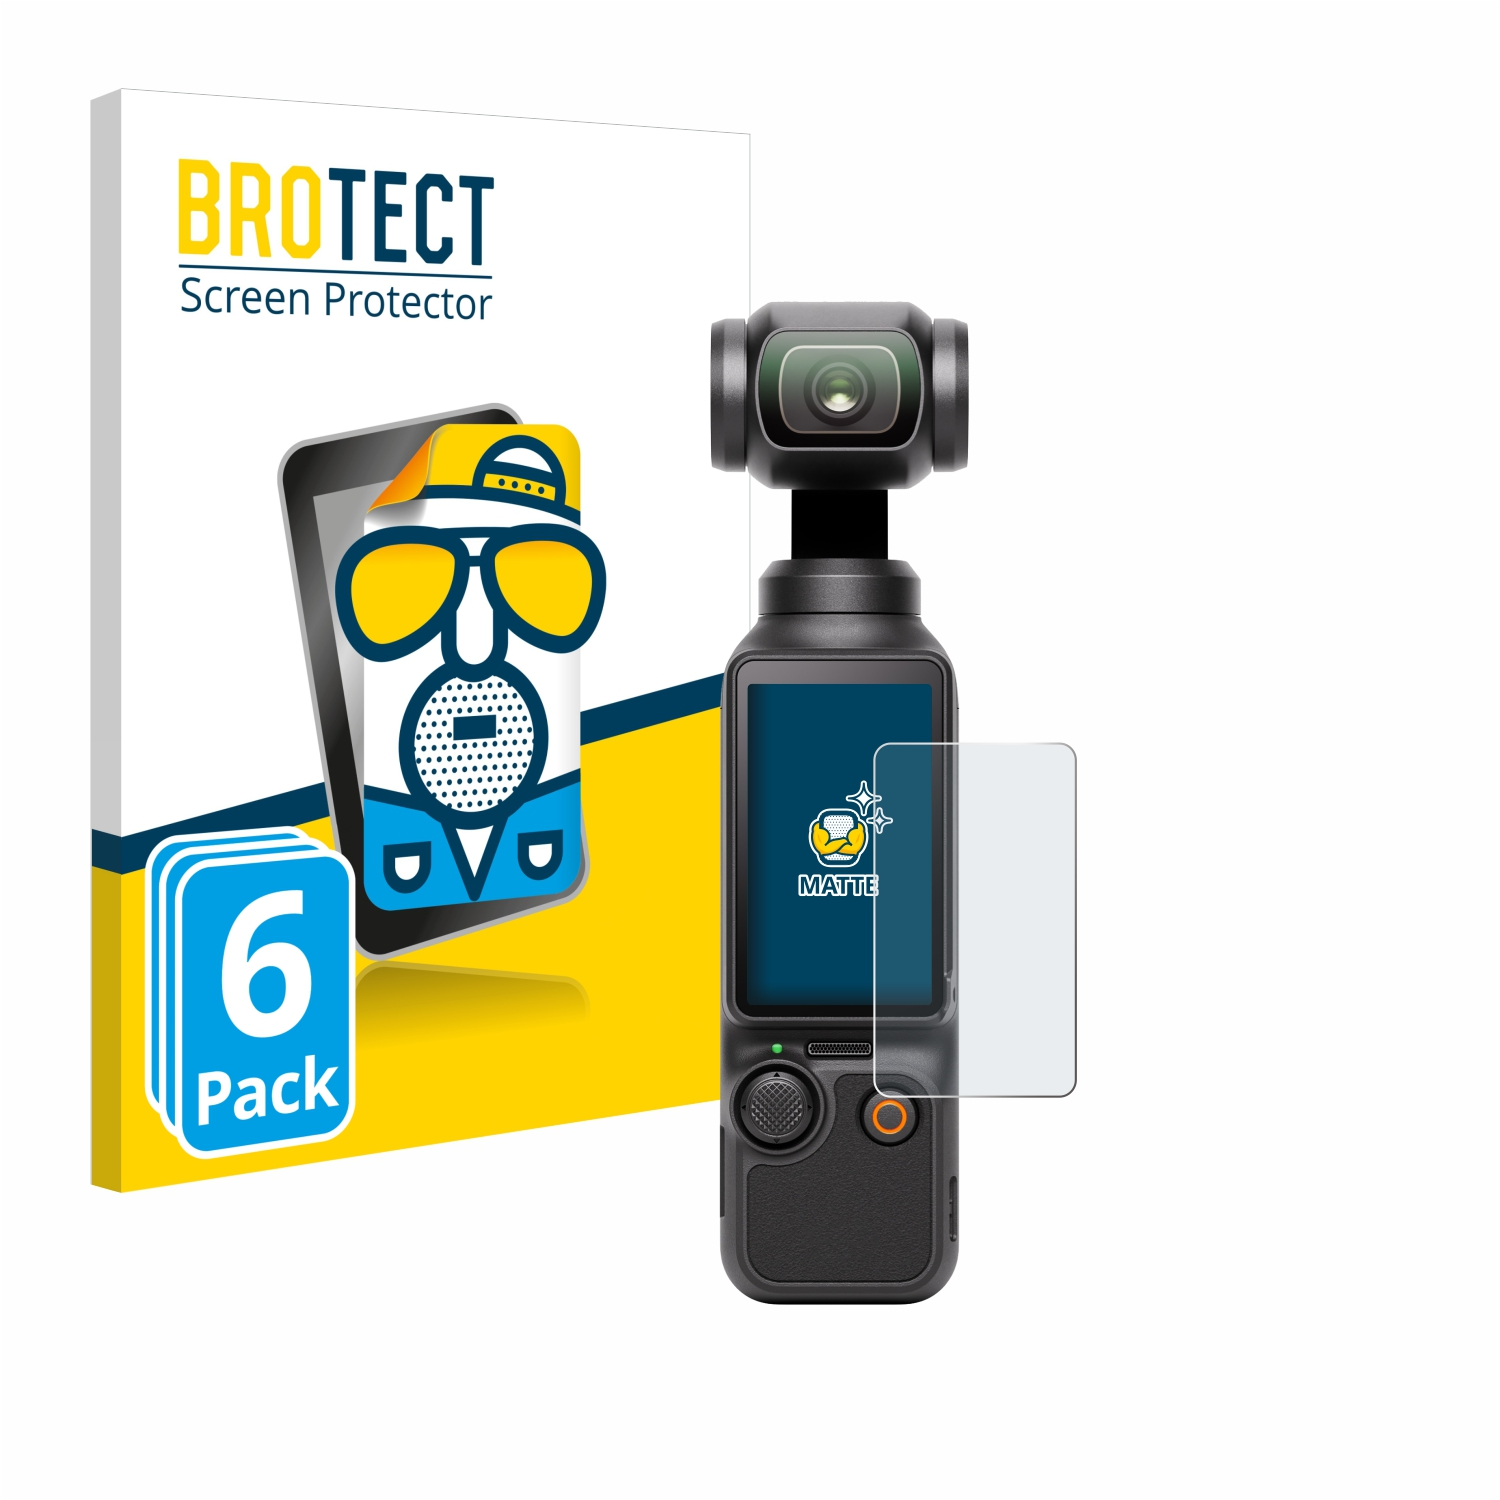 3) Osmo Pocket 6x matte Schutzfolie(für DJI BROTECT